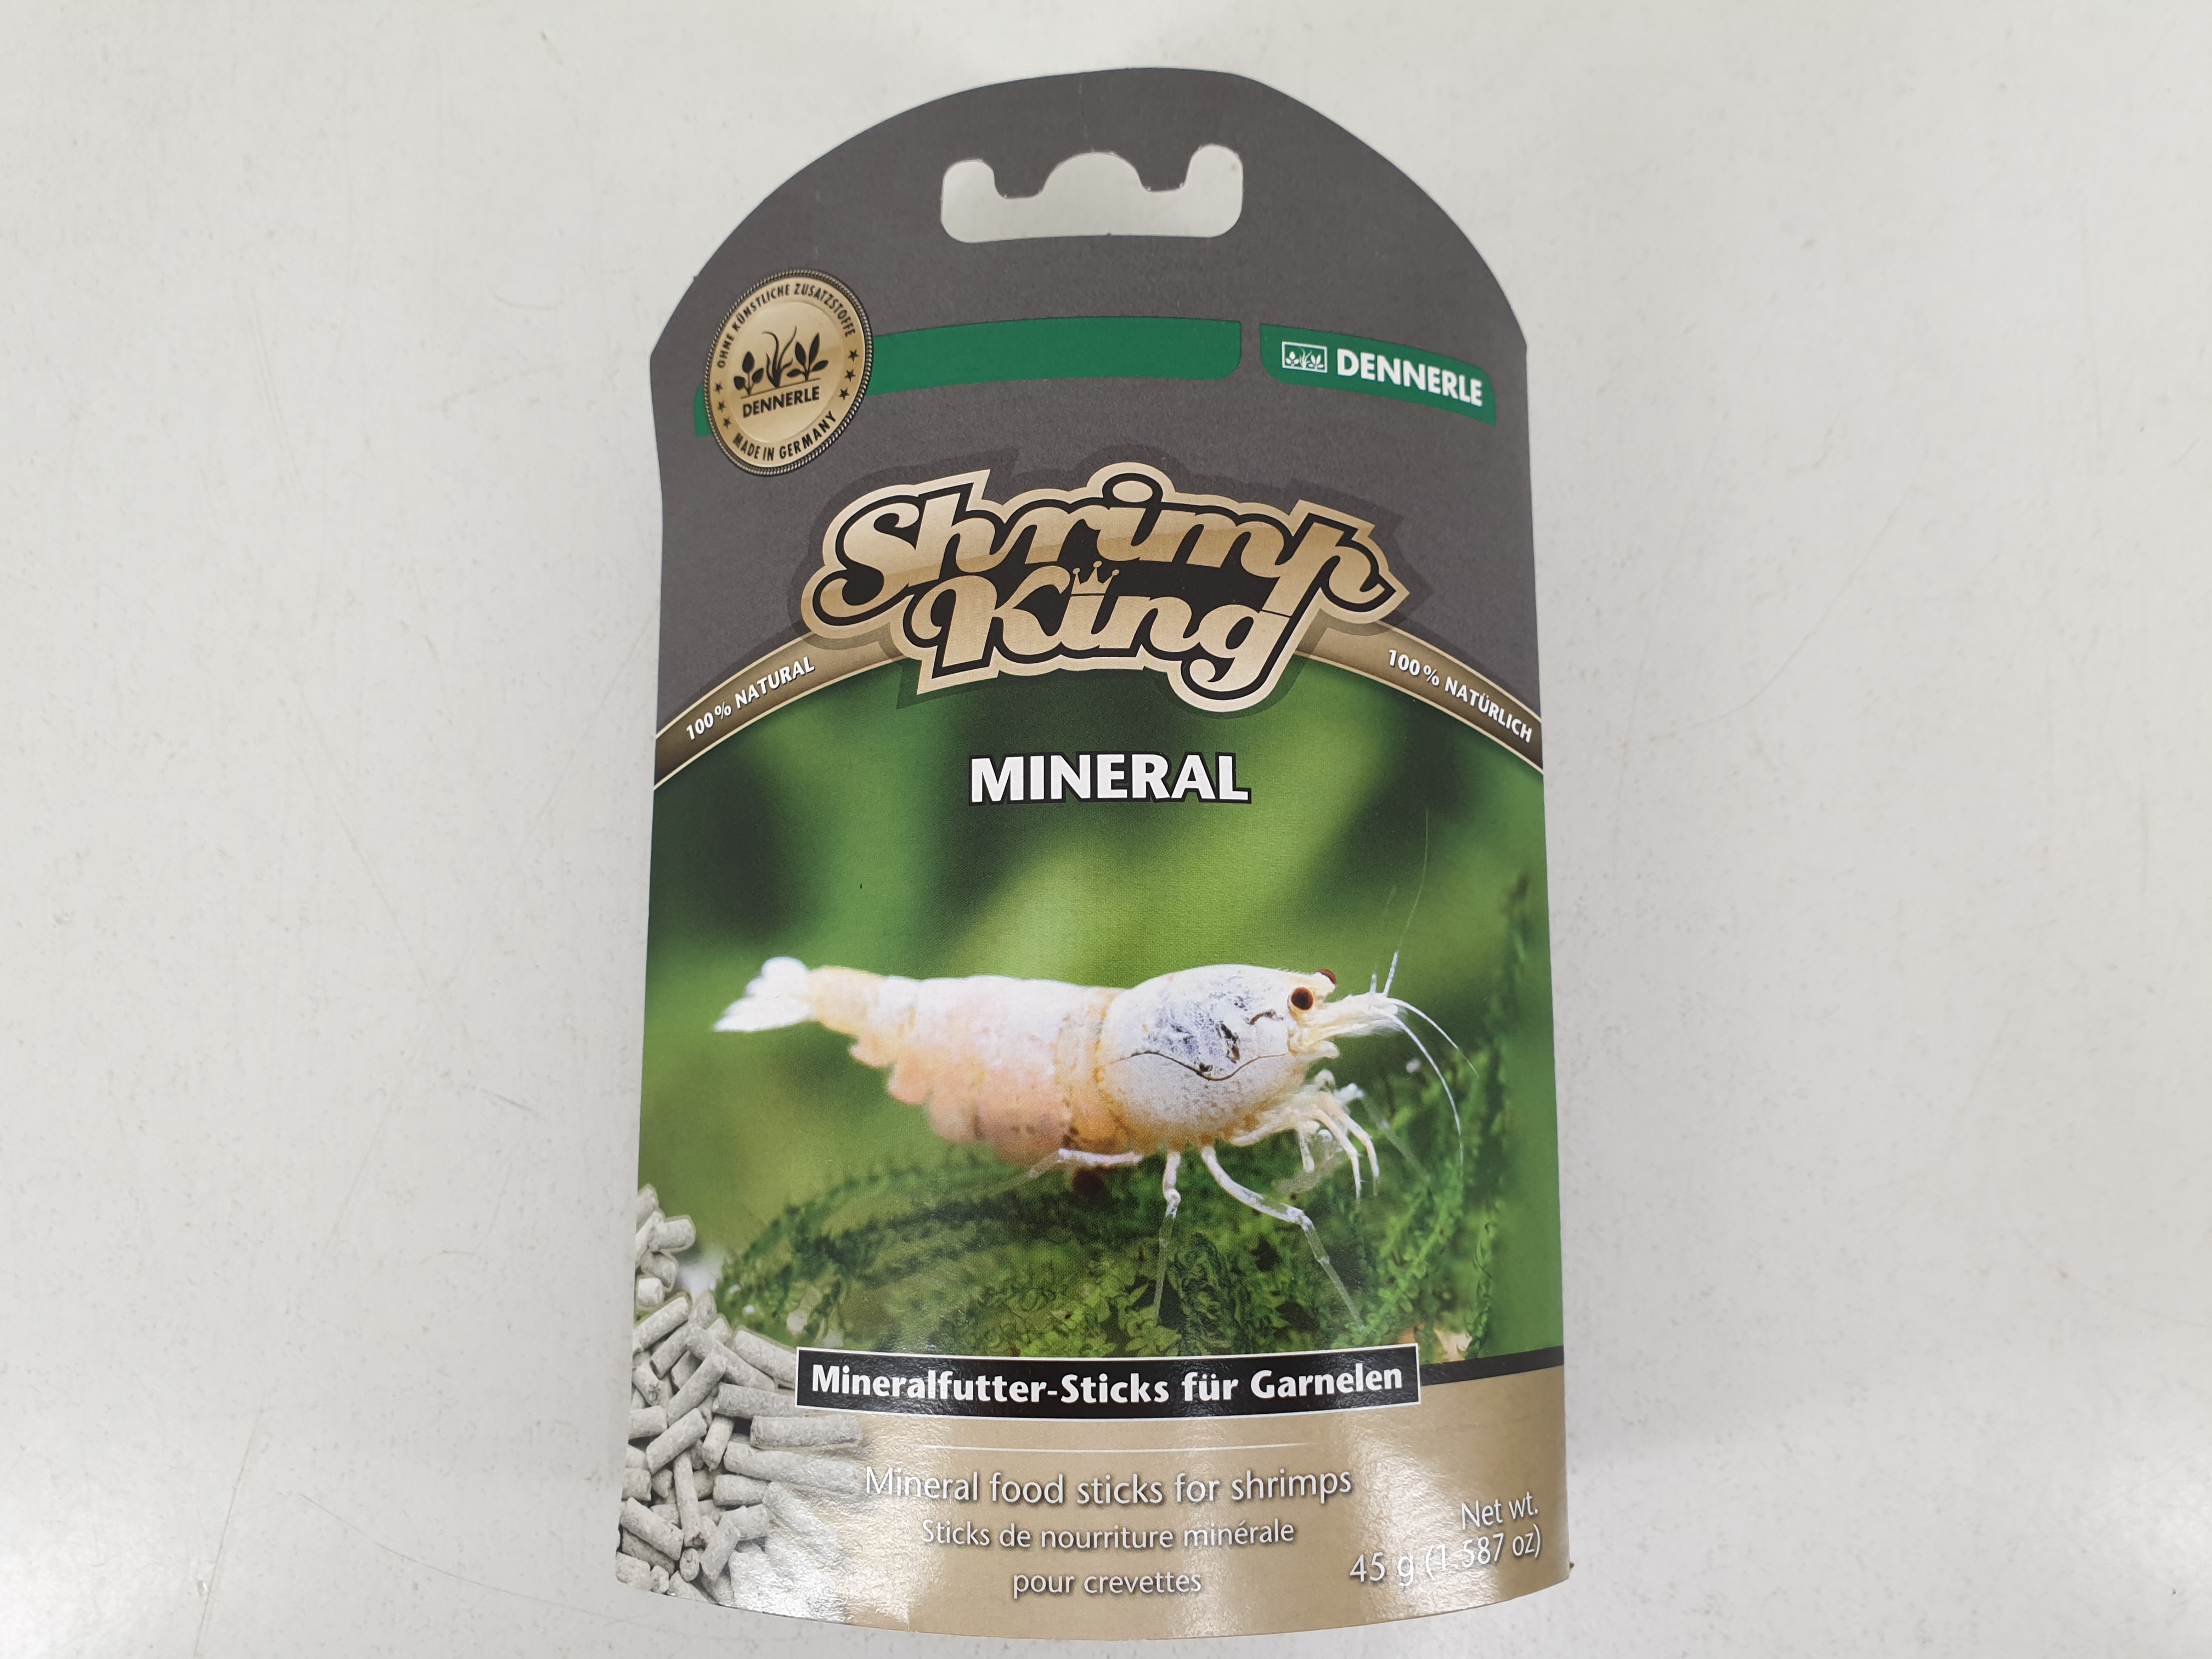 Dennerle Shrimp King Mineral - Mineralfutter-Sticks für Garnelen 45g